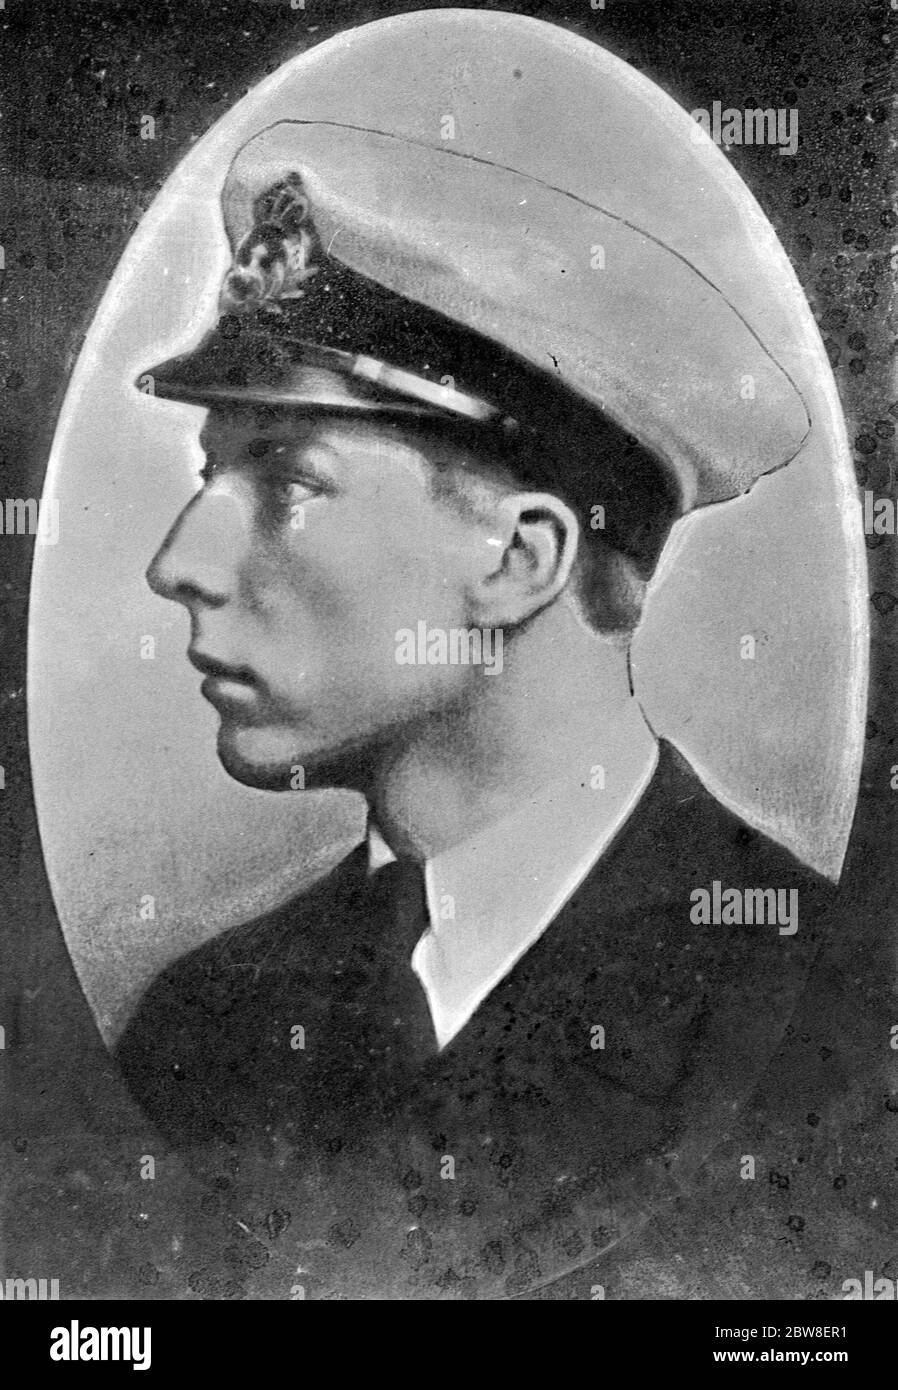 Prince Charles de Belgique à Londres . Prince Charles de Belgique deuxième fils du roi Albert qui est arrivé à Londres en visite privée . 20 janvier 1931 Banque D'Images